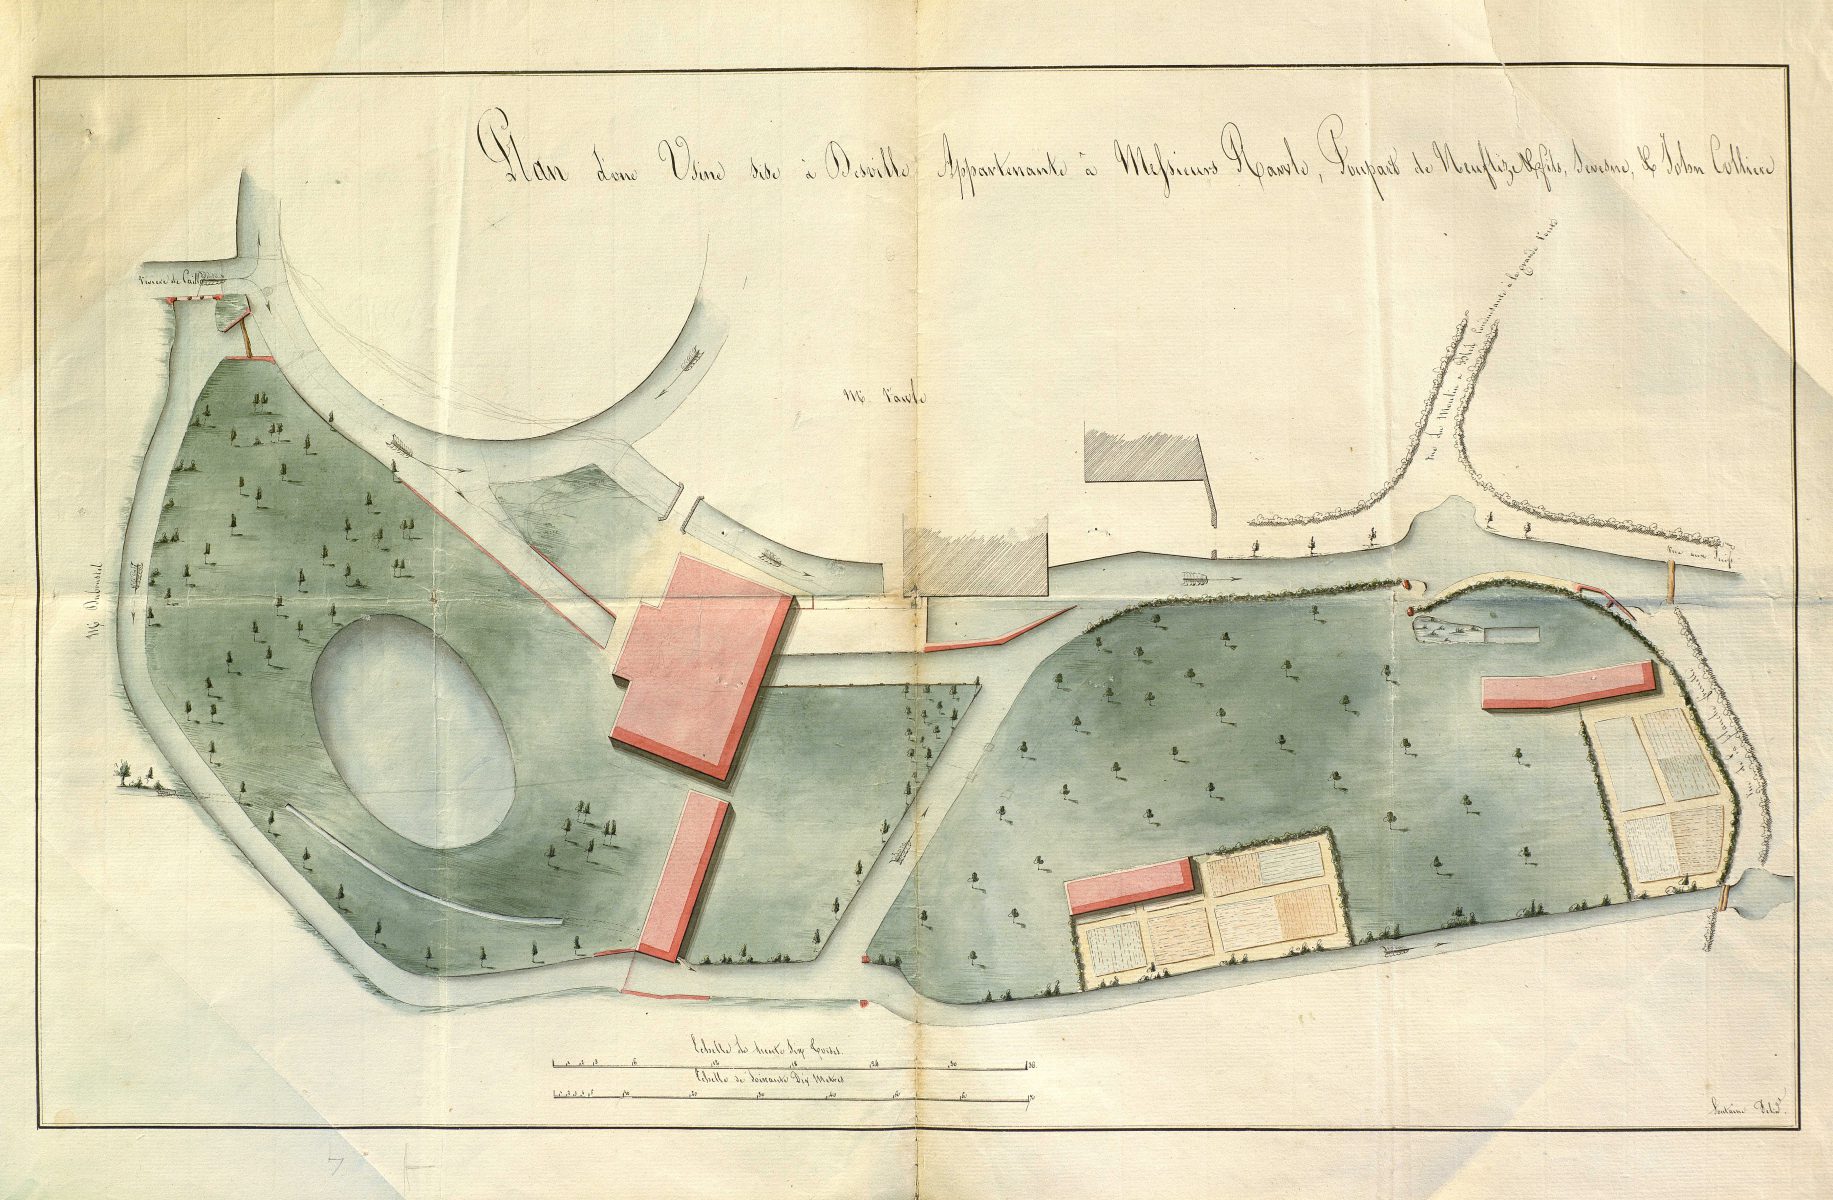 Plan d’une usine sise à Déville appartenant à Messieurs Rawle, Poupard de Neuflize et fils, Sevesne et John Colliere